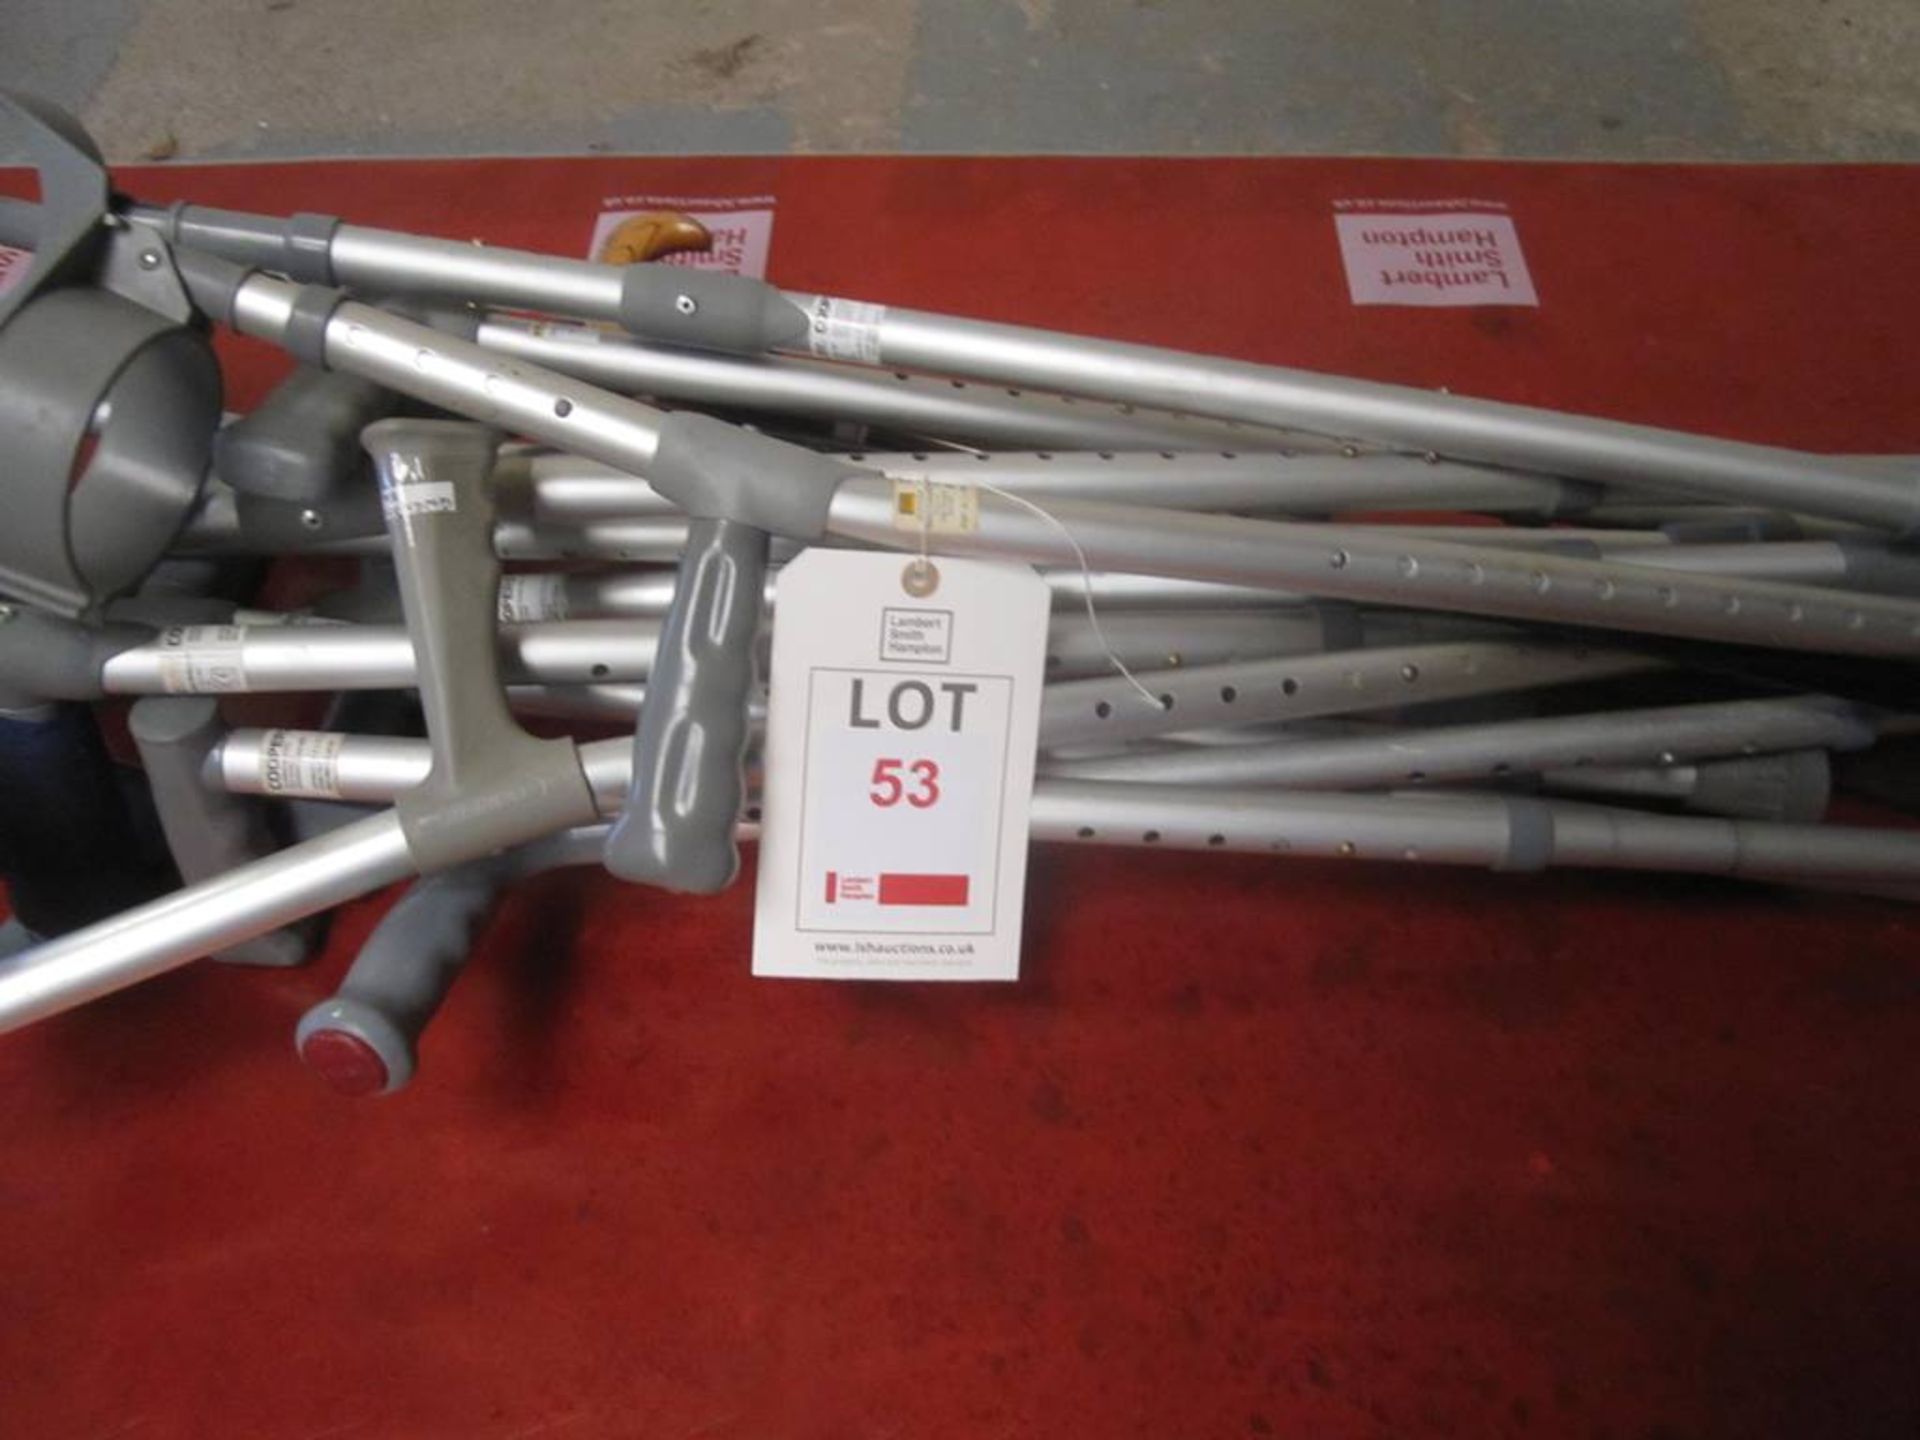 Assorted aluminium hand crutches